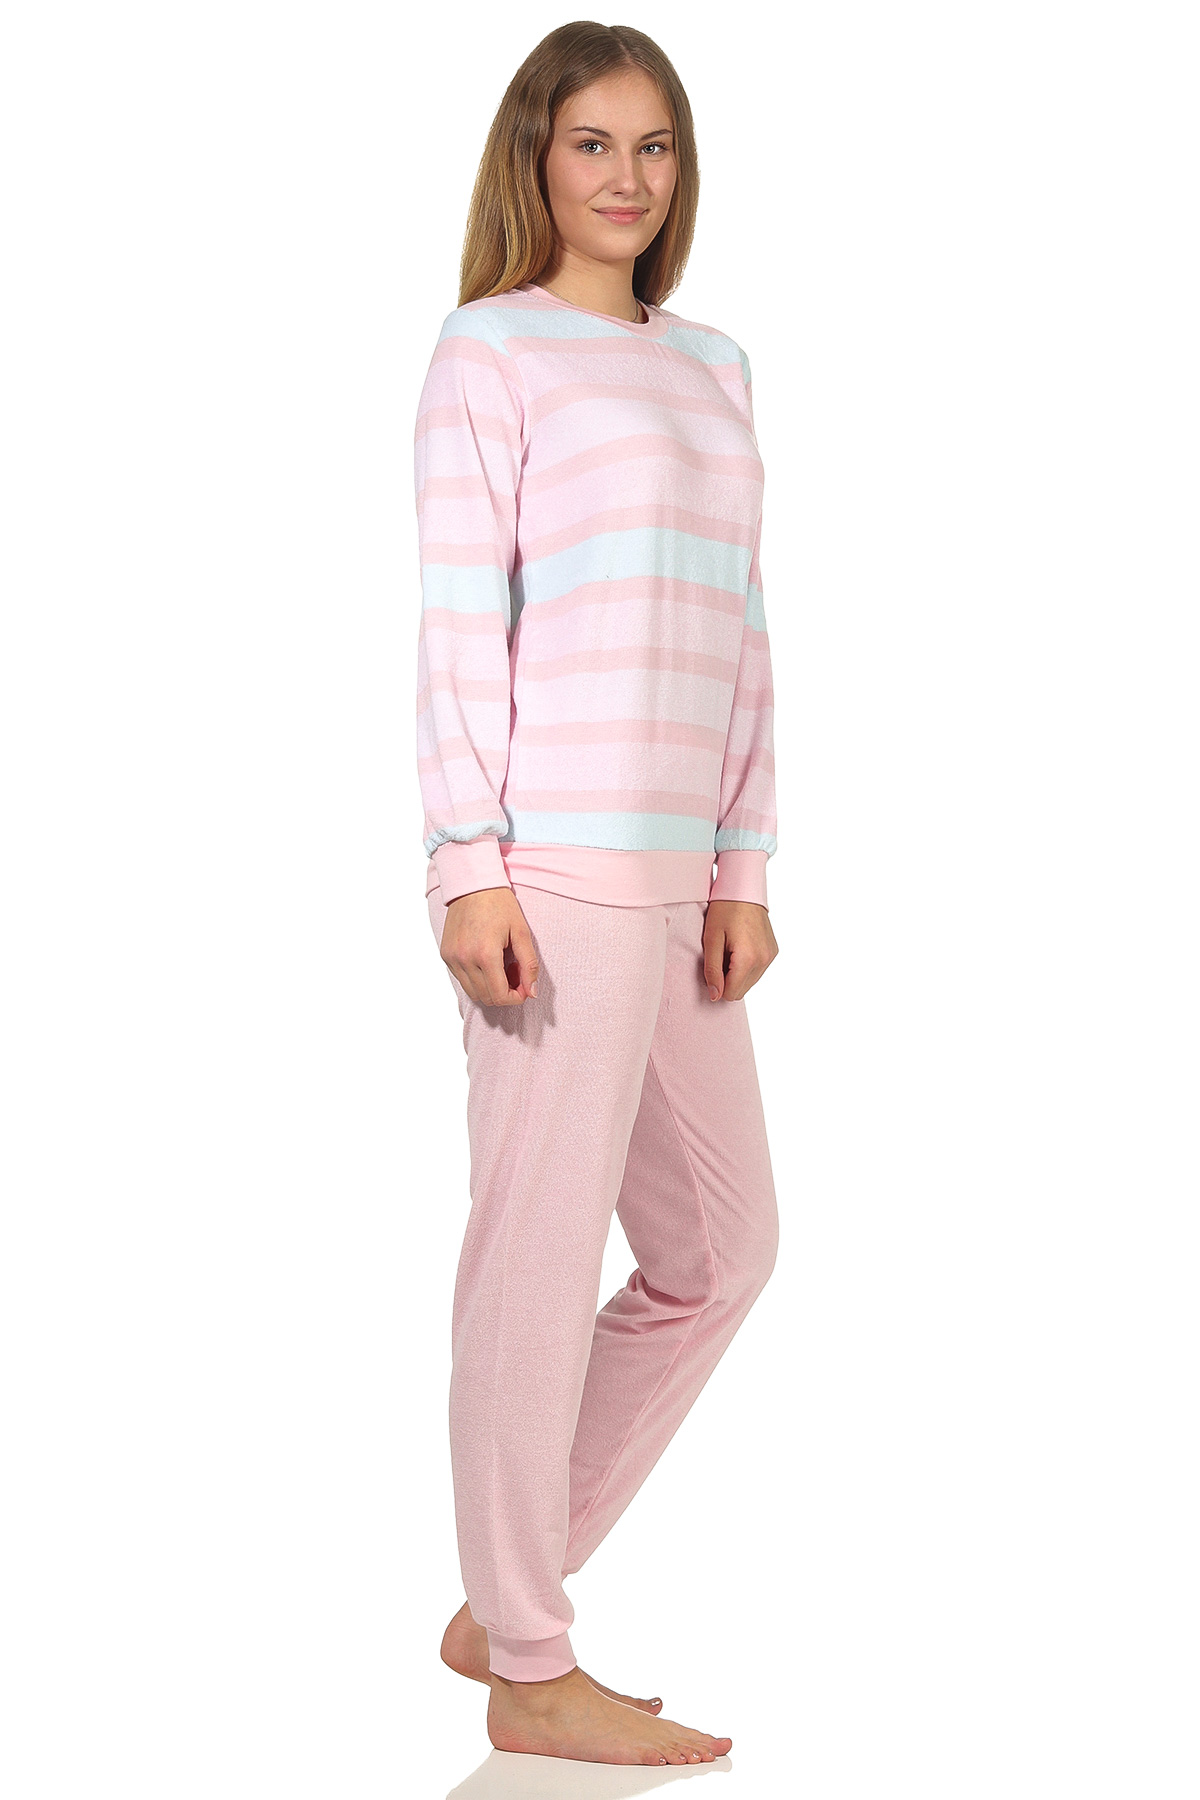 Damen Frottee Pyjama mit Bündchen in eleganter Ringeloptik - auch in Übergrössen - 202 235